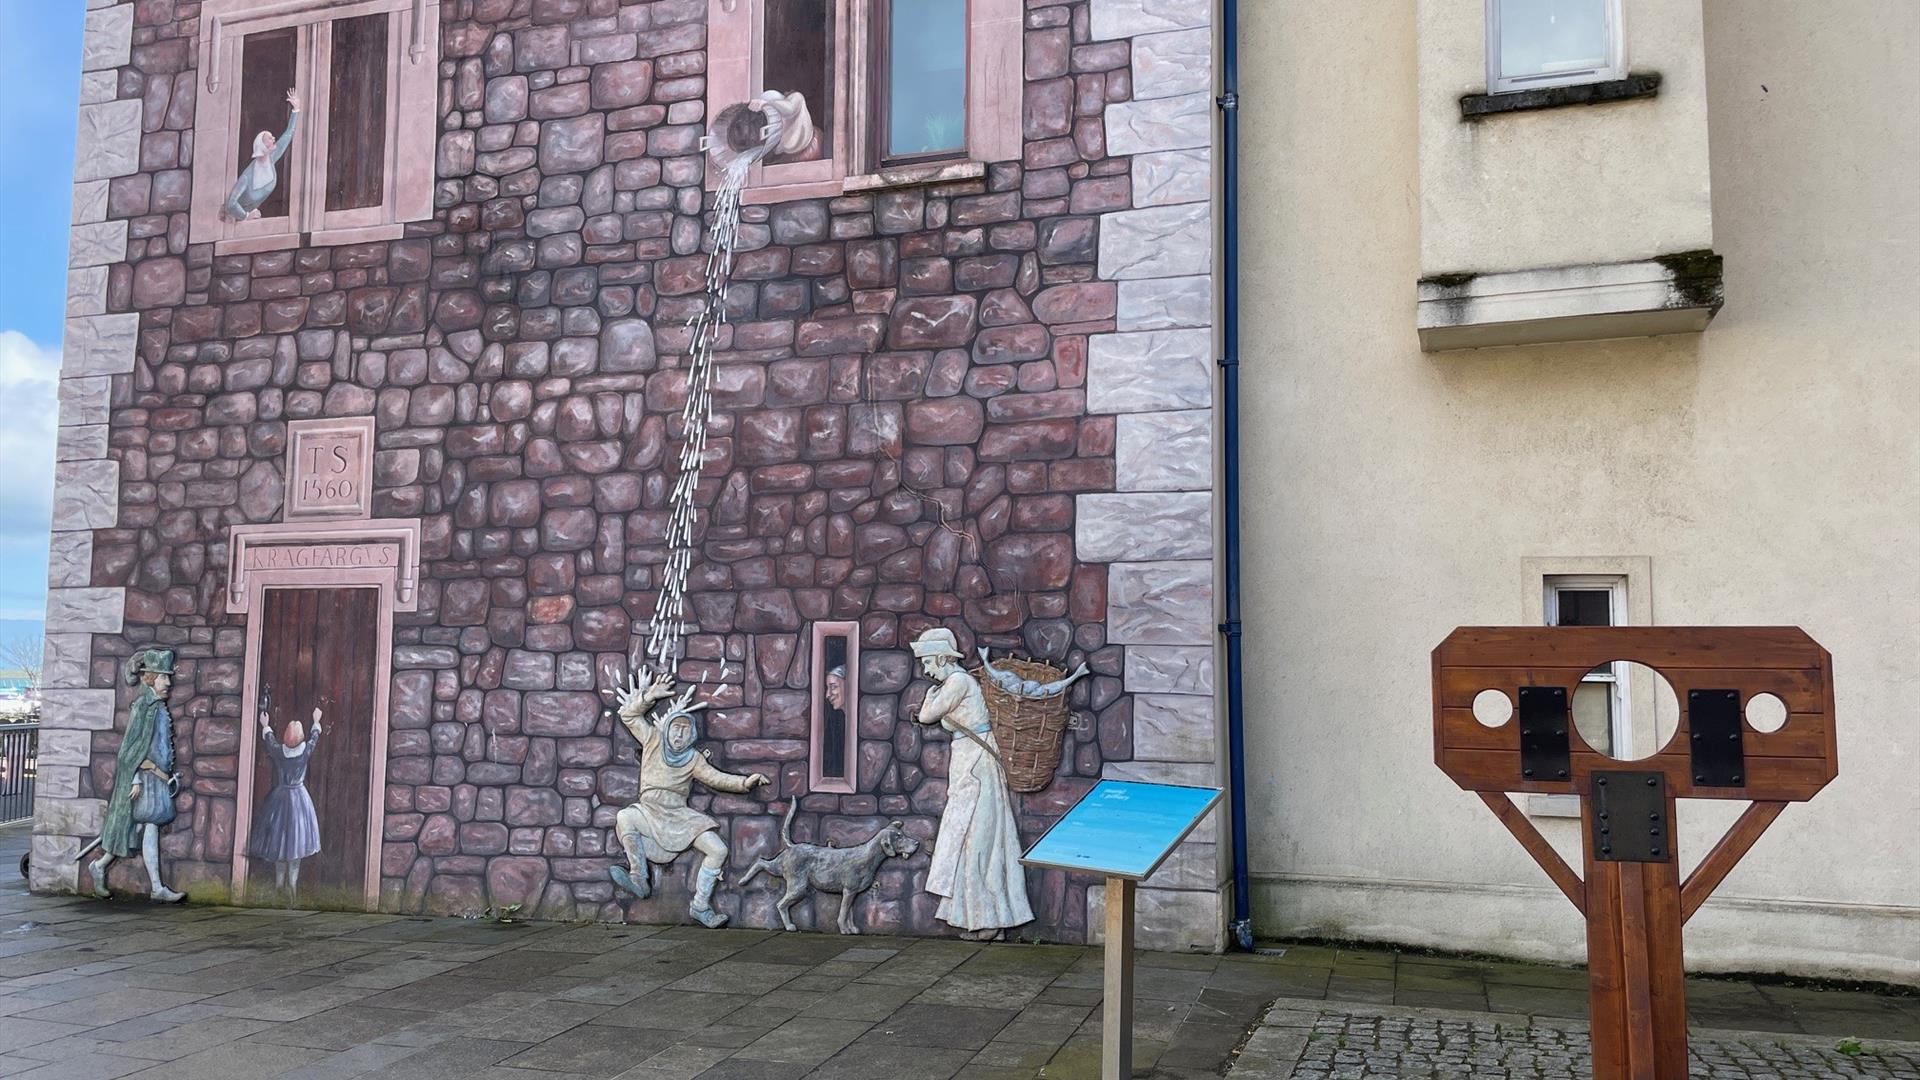 Medieval wall mural in Carrickfergus, with stocks beside it.